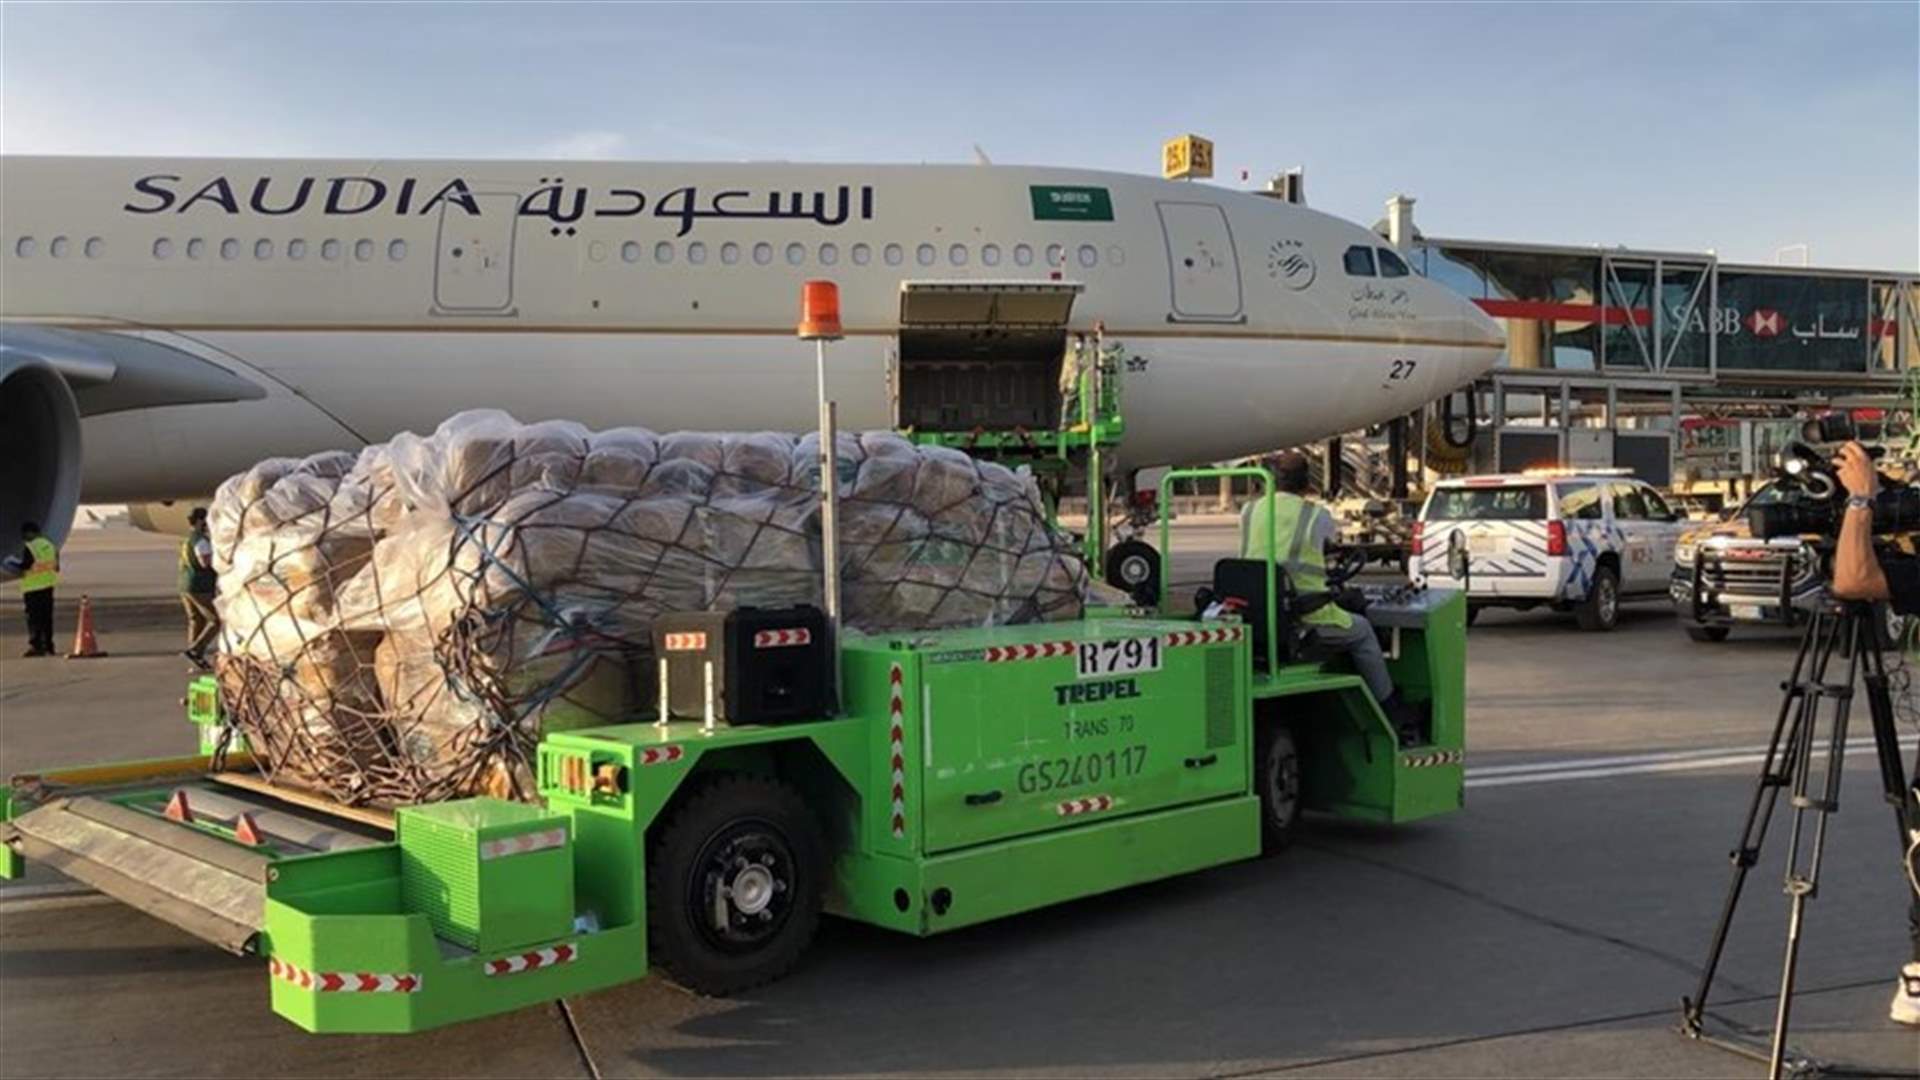 بخاري في استقبال طائرتي مساعدة سعوديتين: نحن دائما إلى جانب لبنان ونسعى إلى أمنه واستقراره